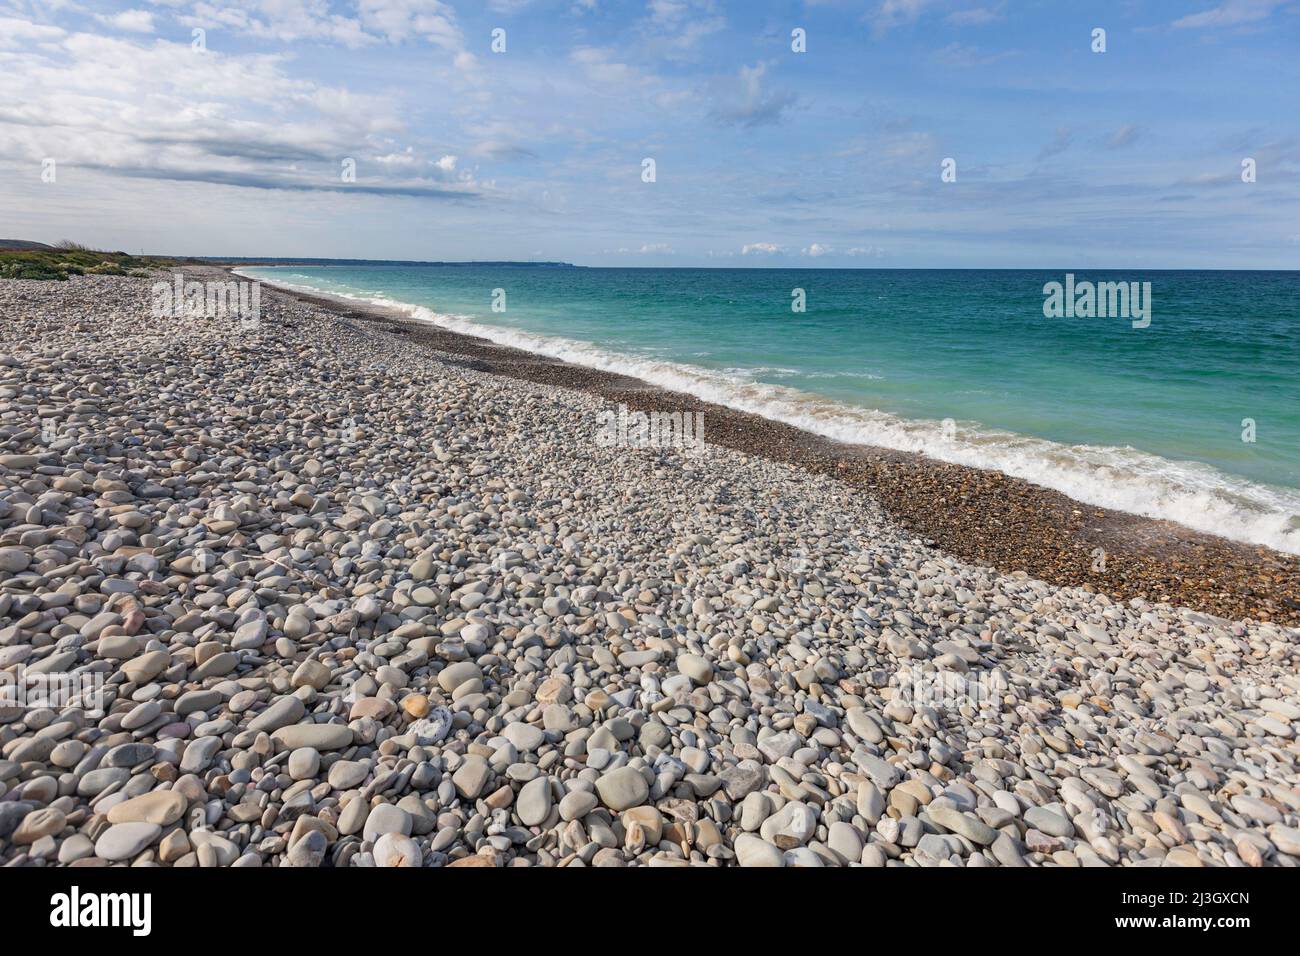 Frankreich, Manche, Cotentin, Cape Hague, Vauville, Das türkisblaue Meer und der Strand der Bucht von Vauville, der als Natura 2000-Gebiet gelistet ist, werden vom Küstenpfad GR223 durchquert Stockfoto